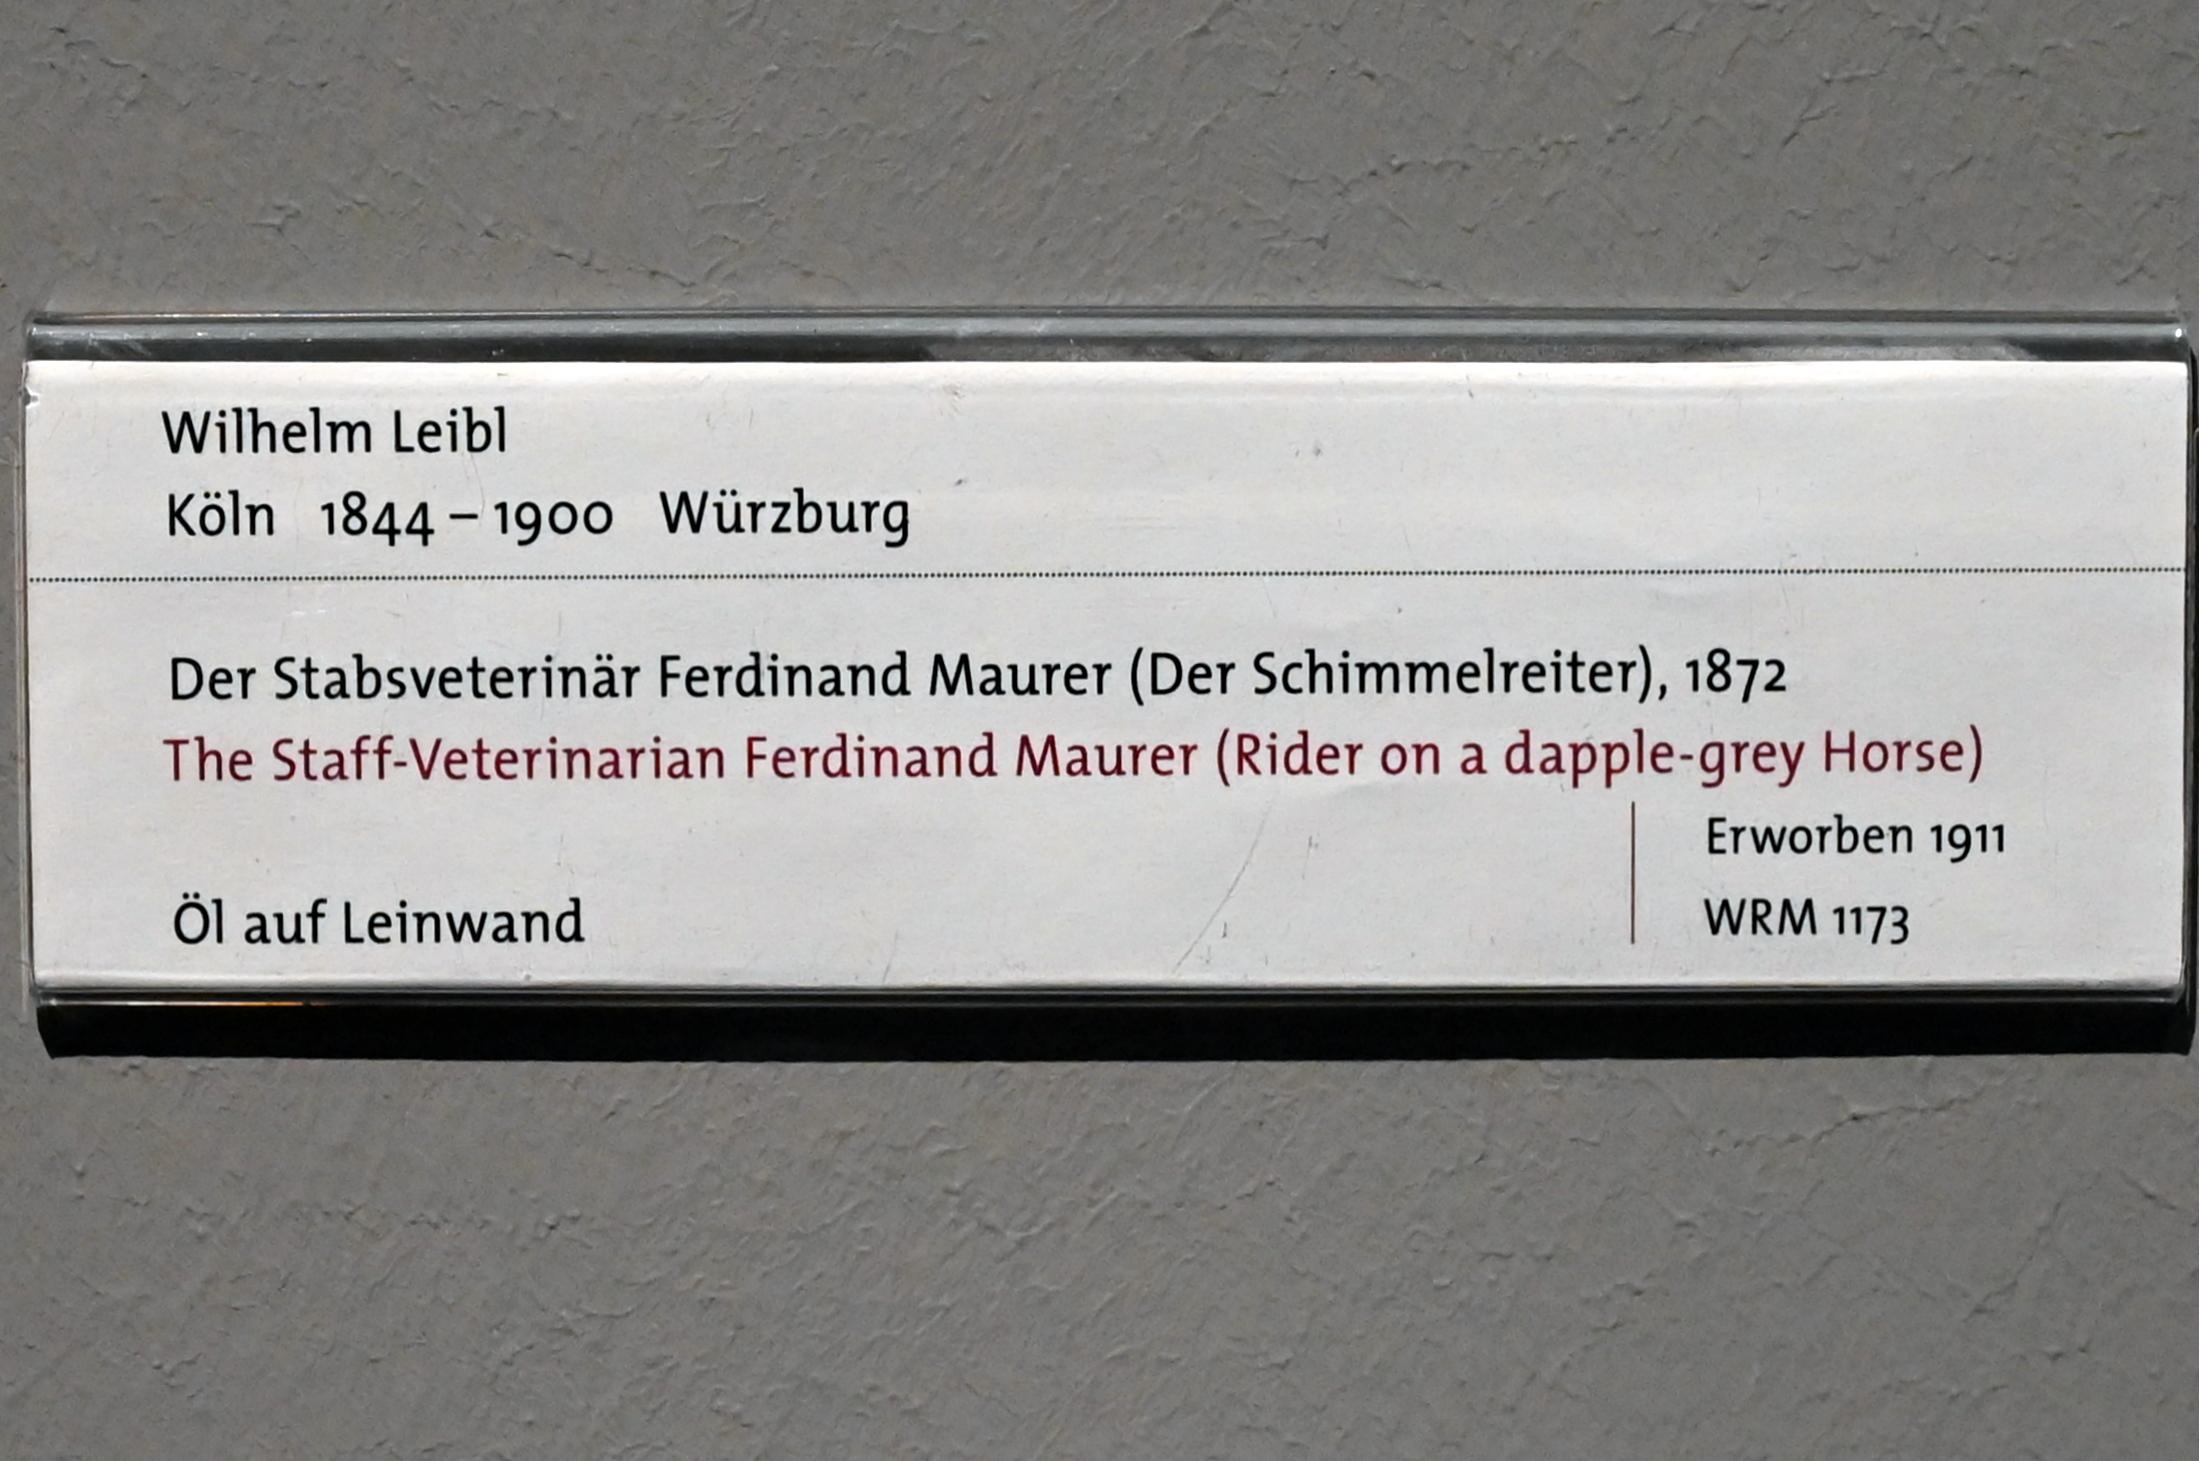 Wilhelm Leibl (1864–1898), Der Stabsveterinär Ferdinand Maurer (Der Schimmelreiter), Köln, Wallraf-Richartz-Museum, 19. Jahrhundert - Saal 5, 1872, Bild 2/2